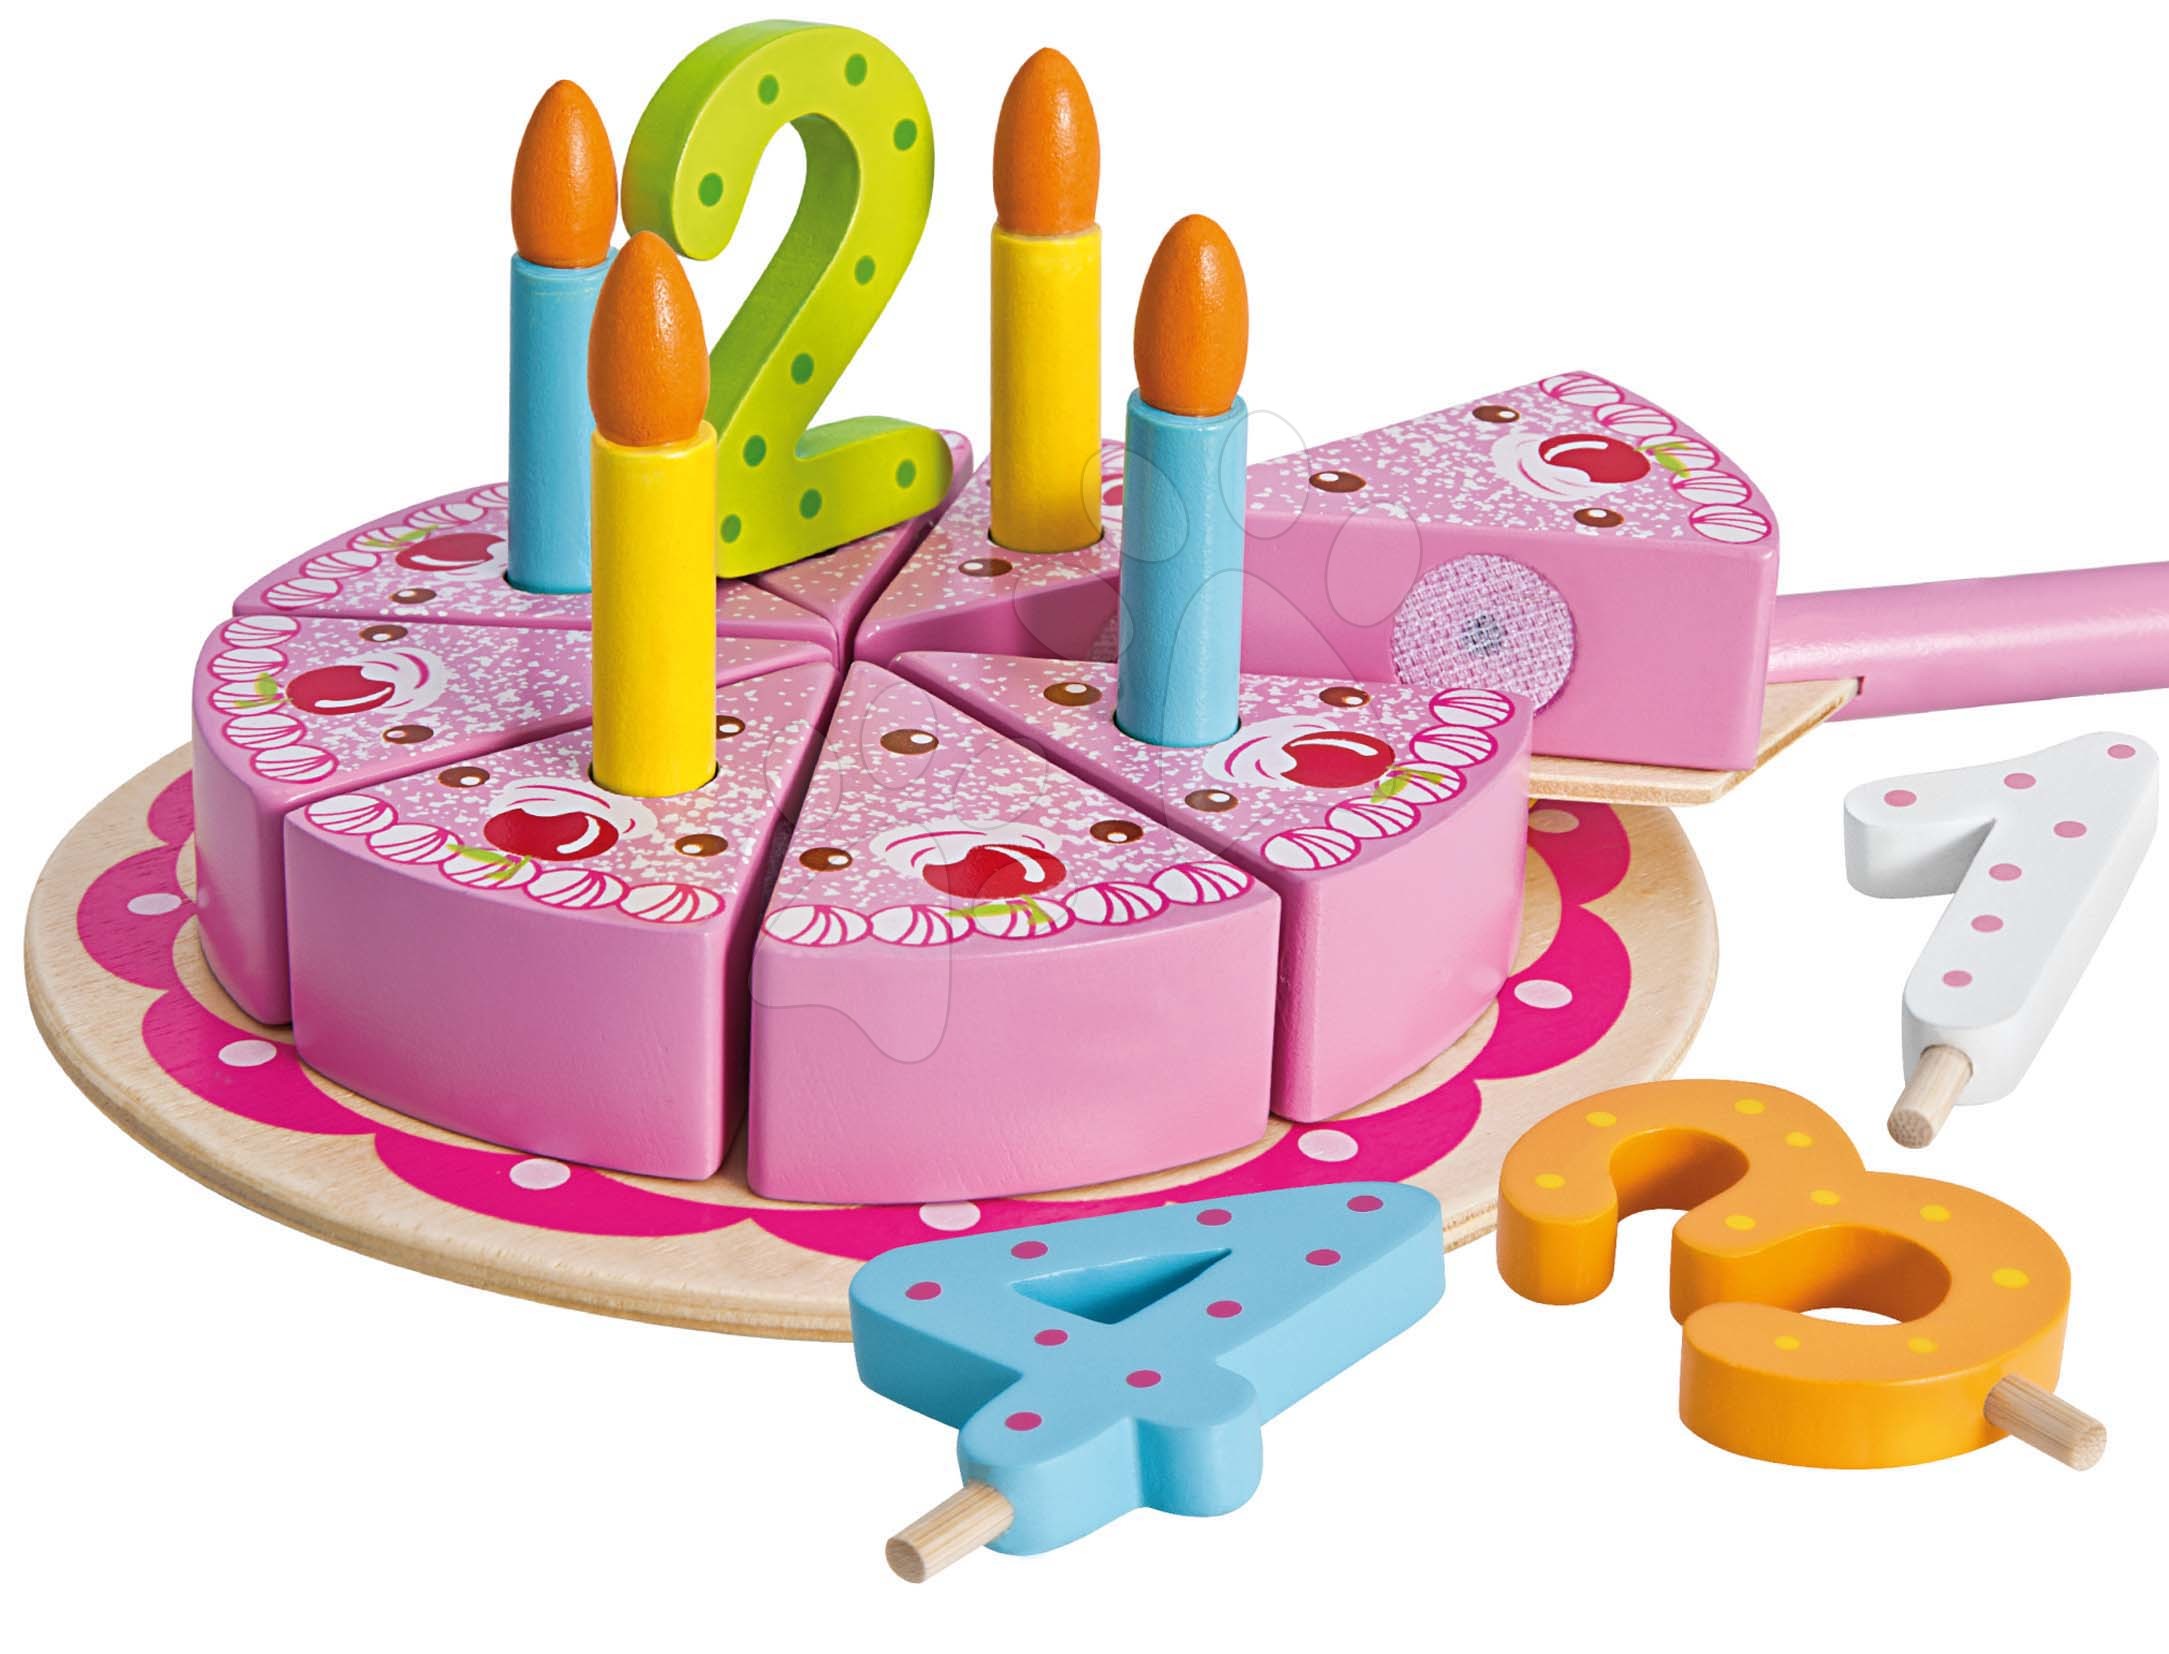 Drevené kuchynky - Drevená narodeninová torta na podnose Cake Eichhorn so sviečkami a číslami od 24 mes